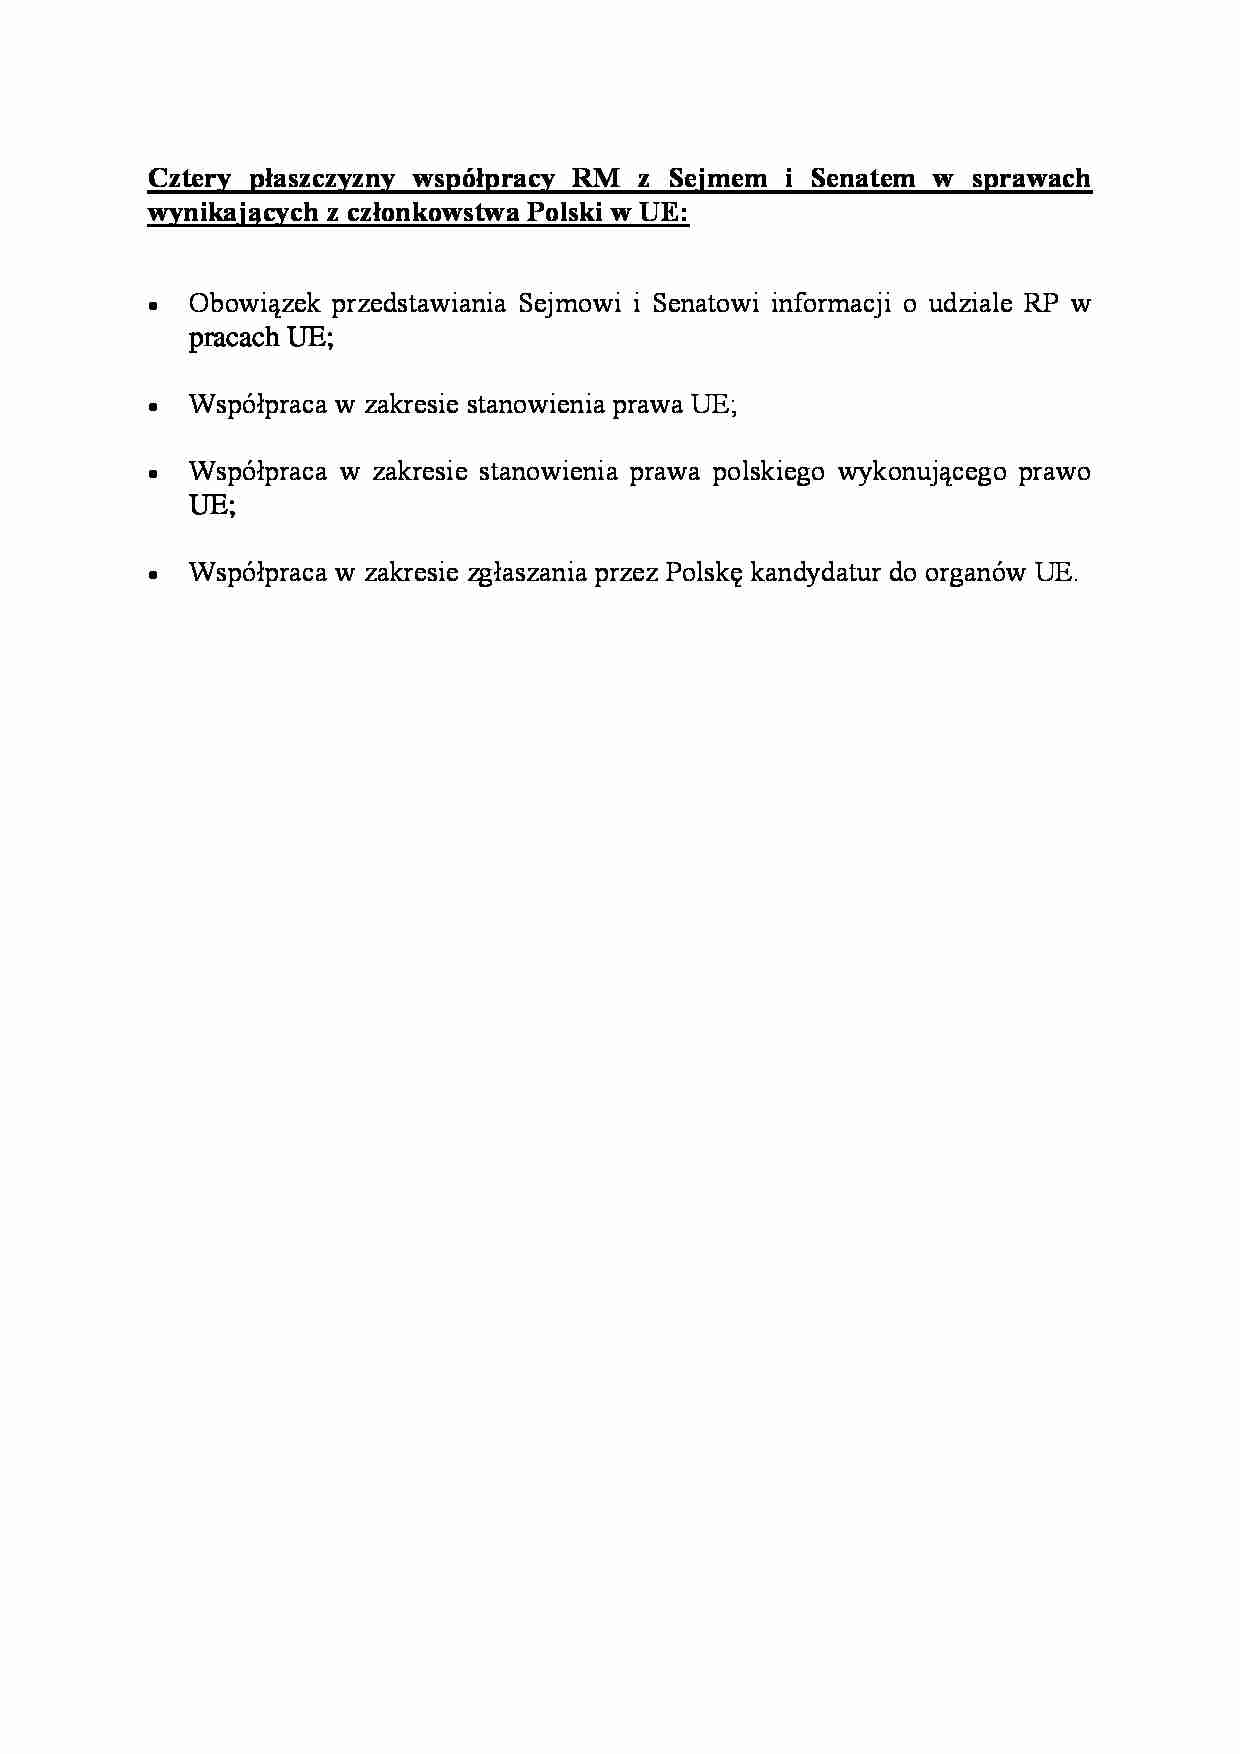 Cztery płaszczyzny współpracy RM z Sejmem - strona 1